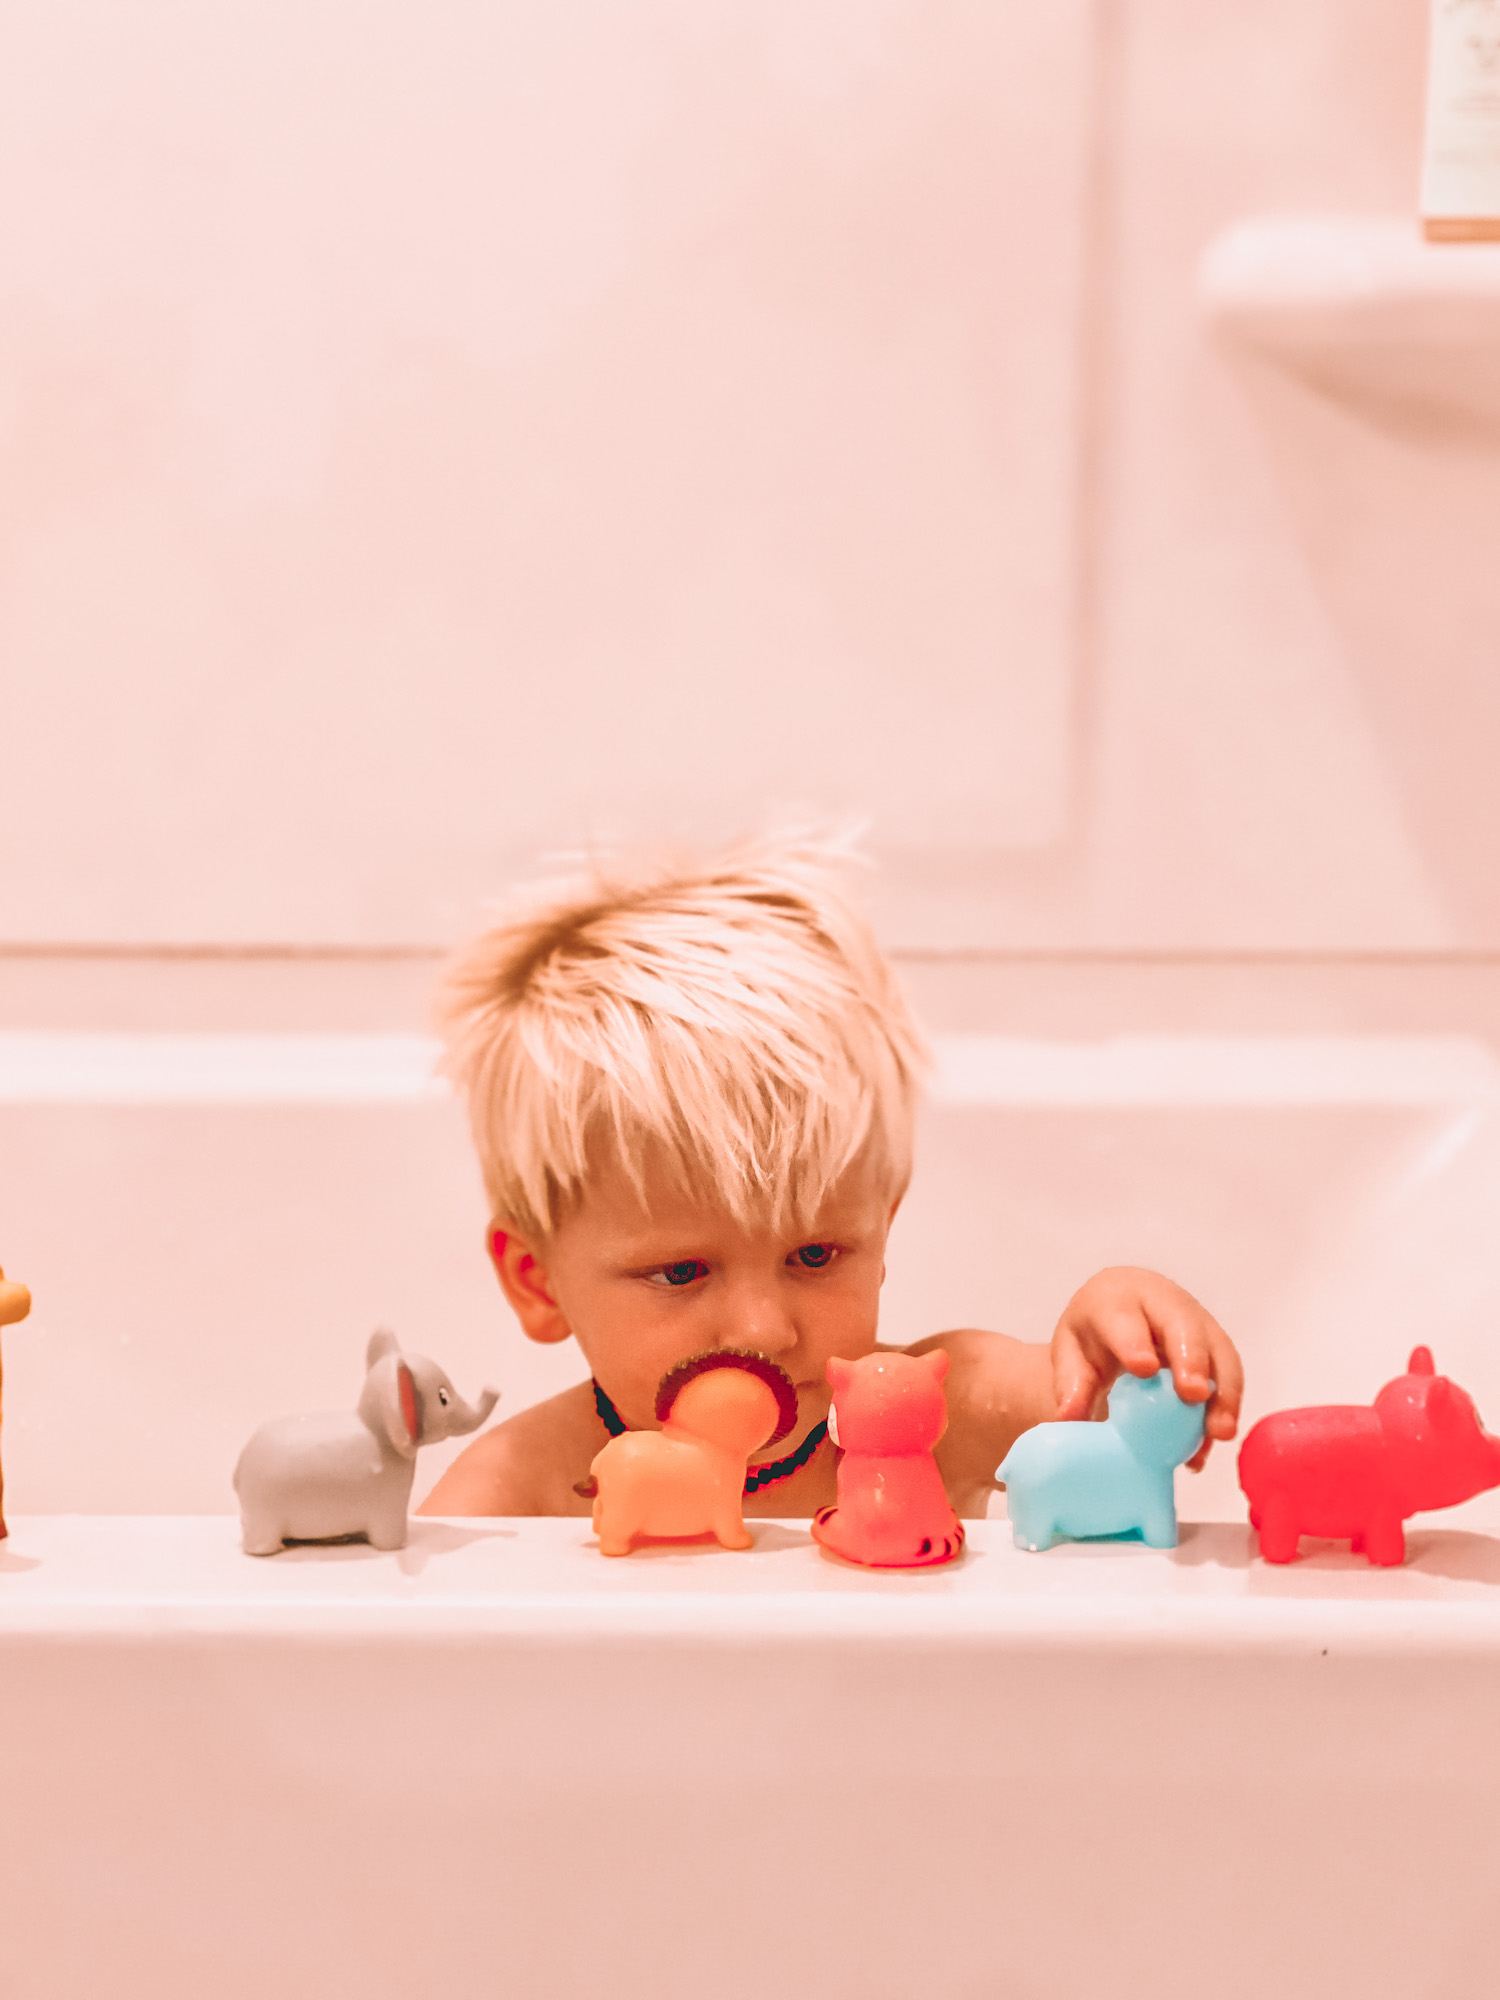 Little boy lining up toys on bath tub